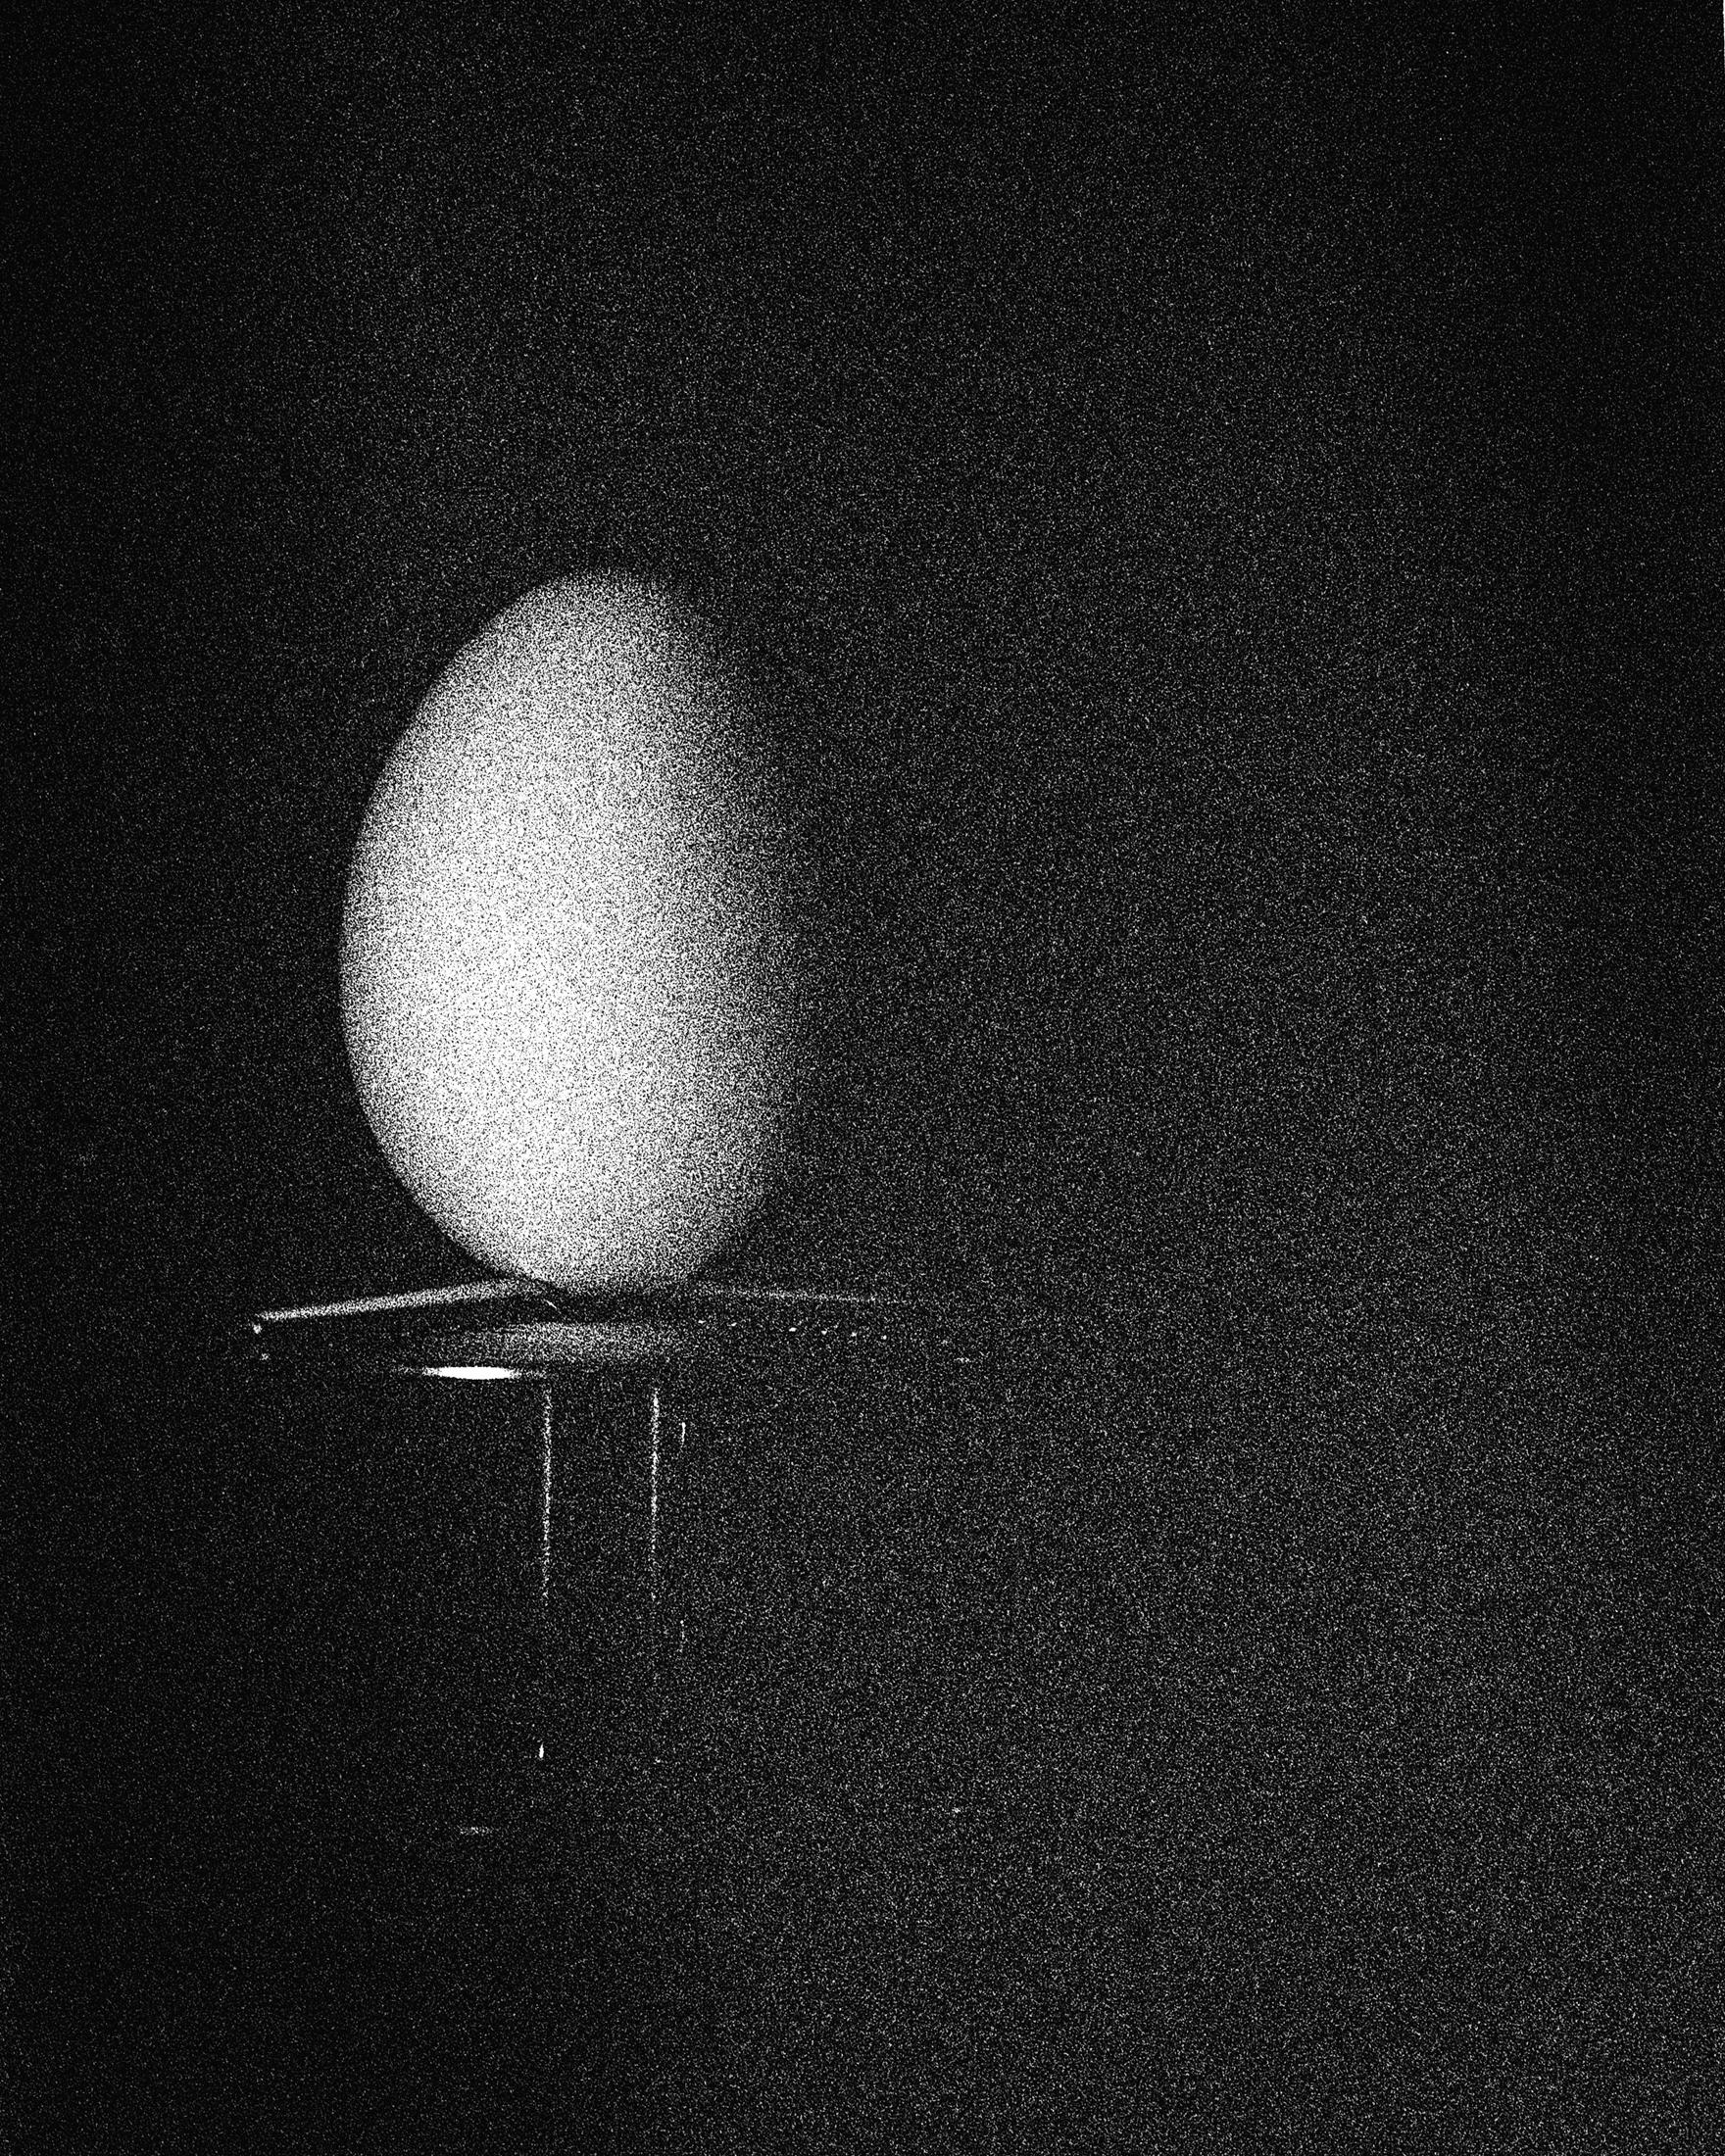 Étude à l'œuf 11. Nature morte . Impression à la gélatine argentée en noir et blanc